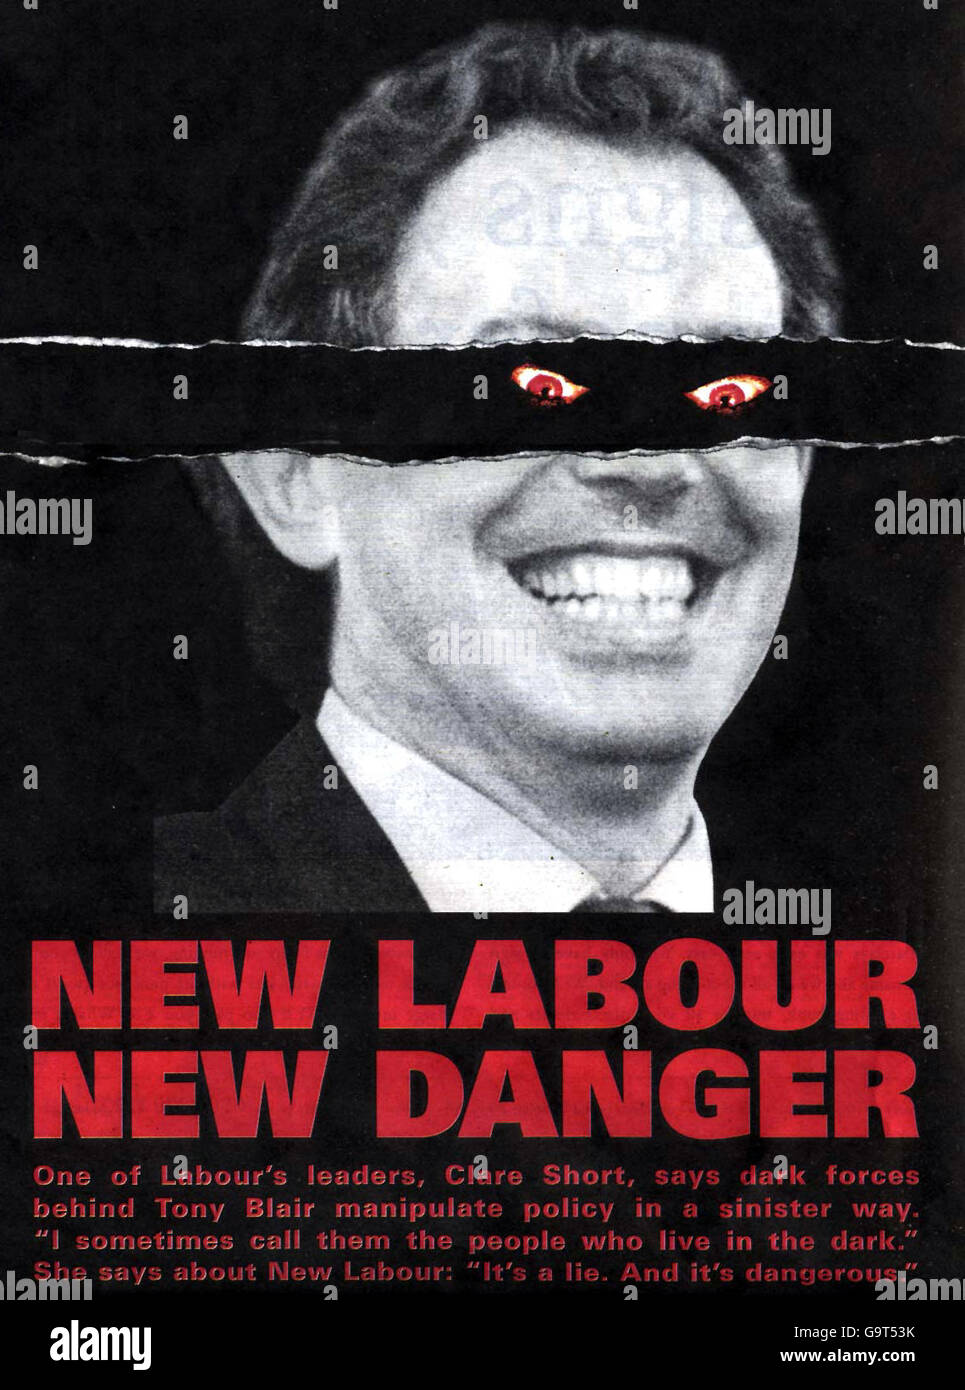 Le Bureau central conservateur a dévoilé leur dernière arme de campagne pré-électorale, une affiche représentant Tony Blair avec des yeux démoniaques. Banque D'Images